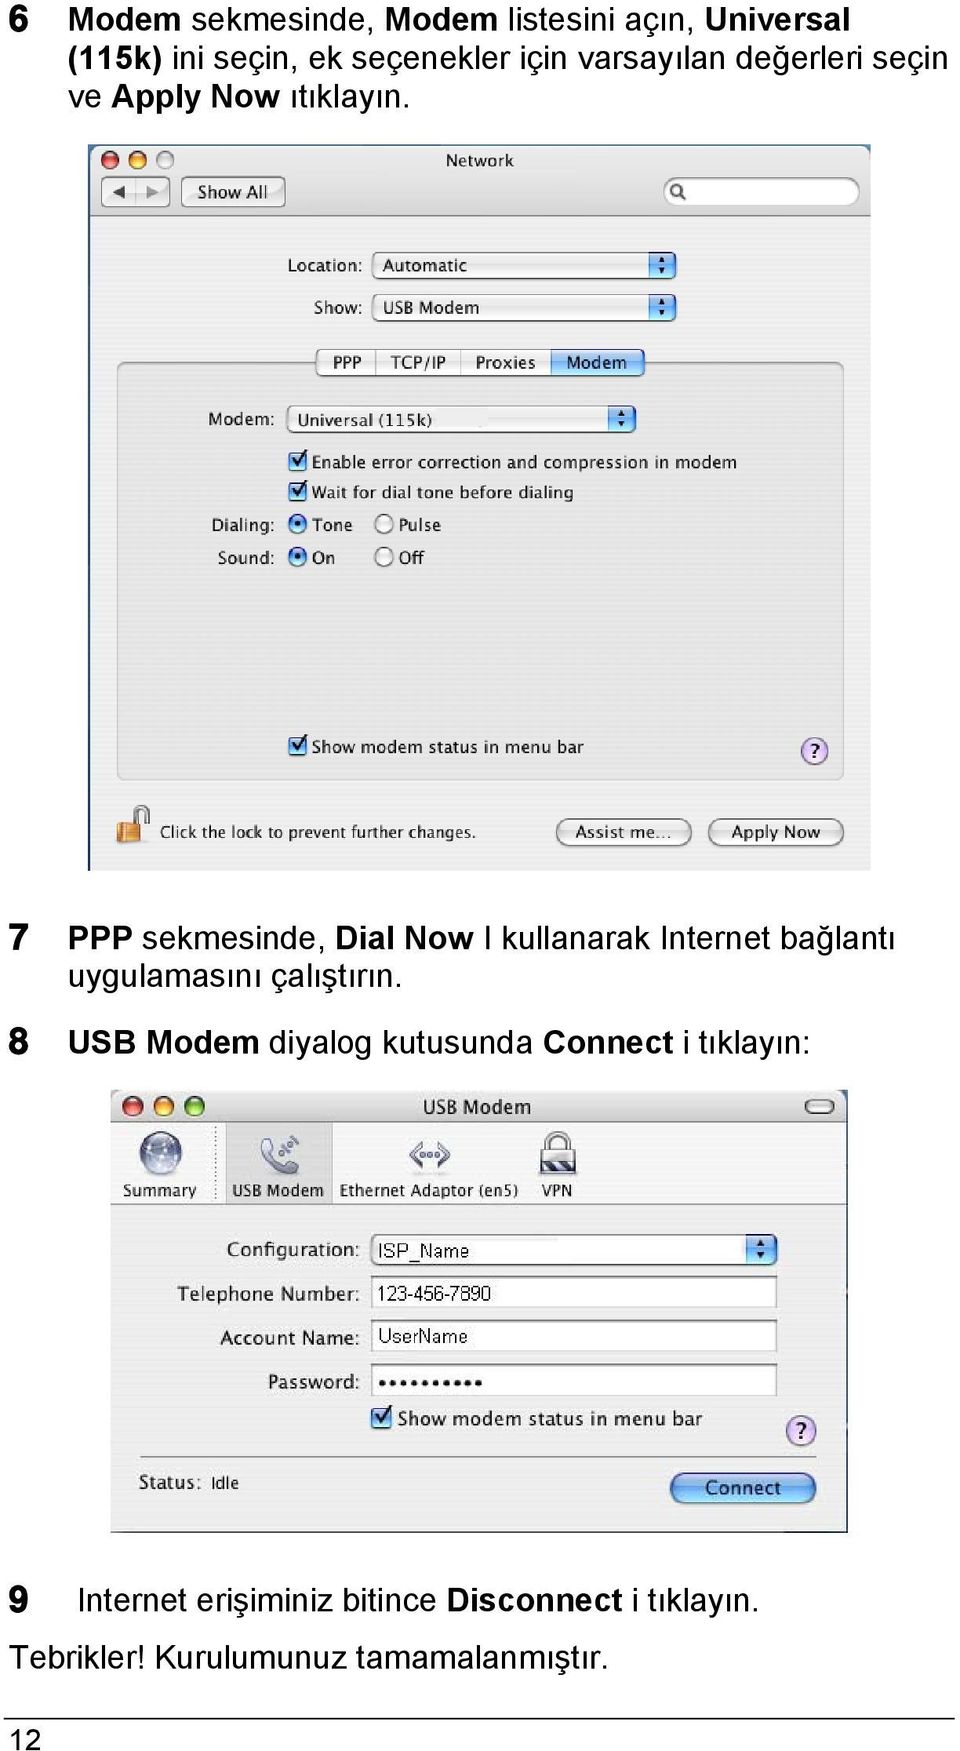 7 PPP sekmesinde, Dial Now I kullanarak Internet bağlantı uygulamasını çalıştırın.